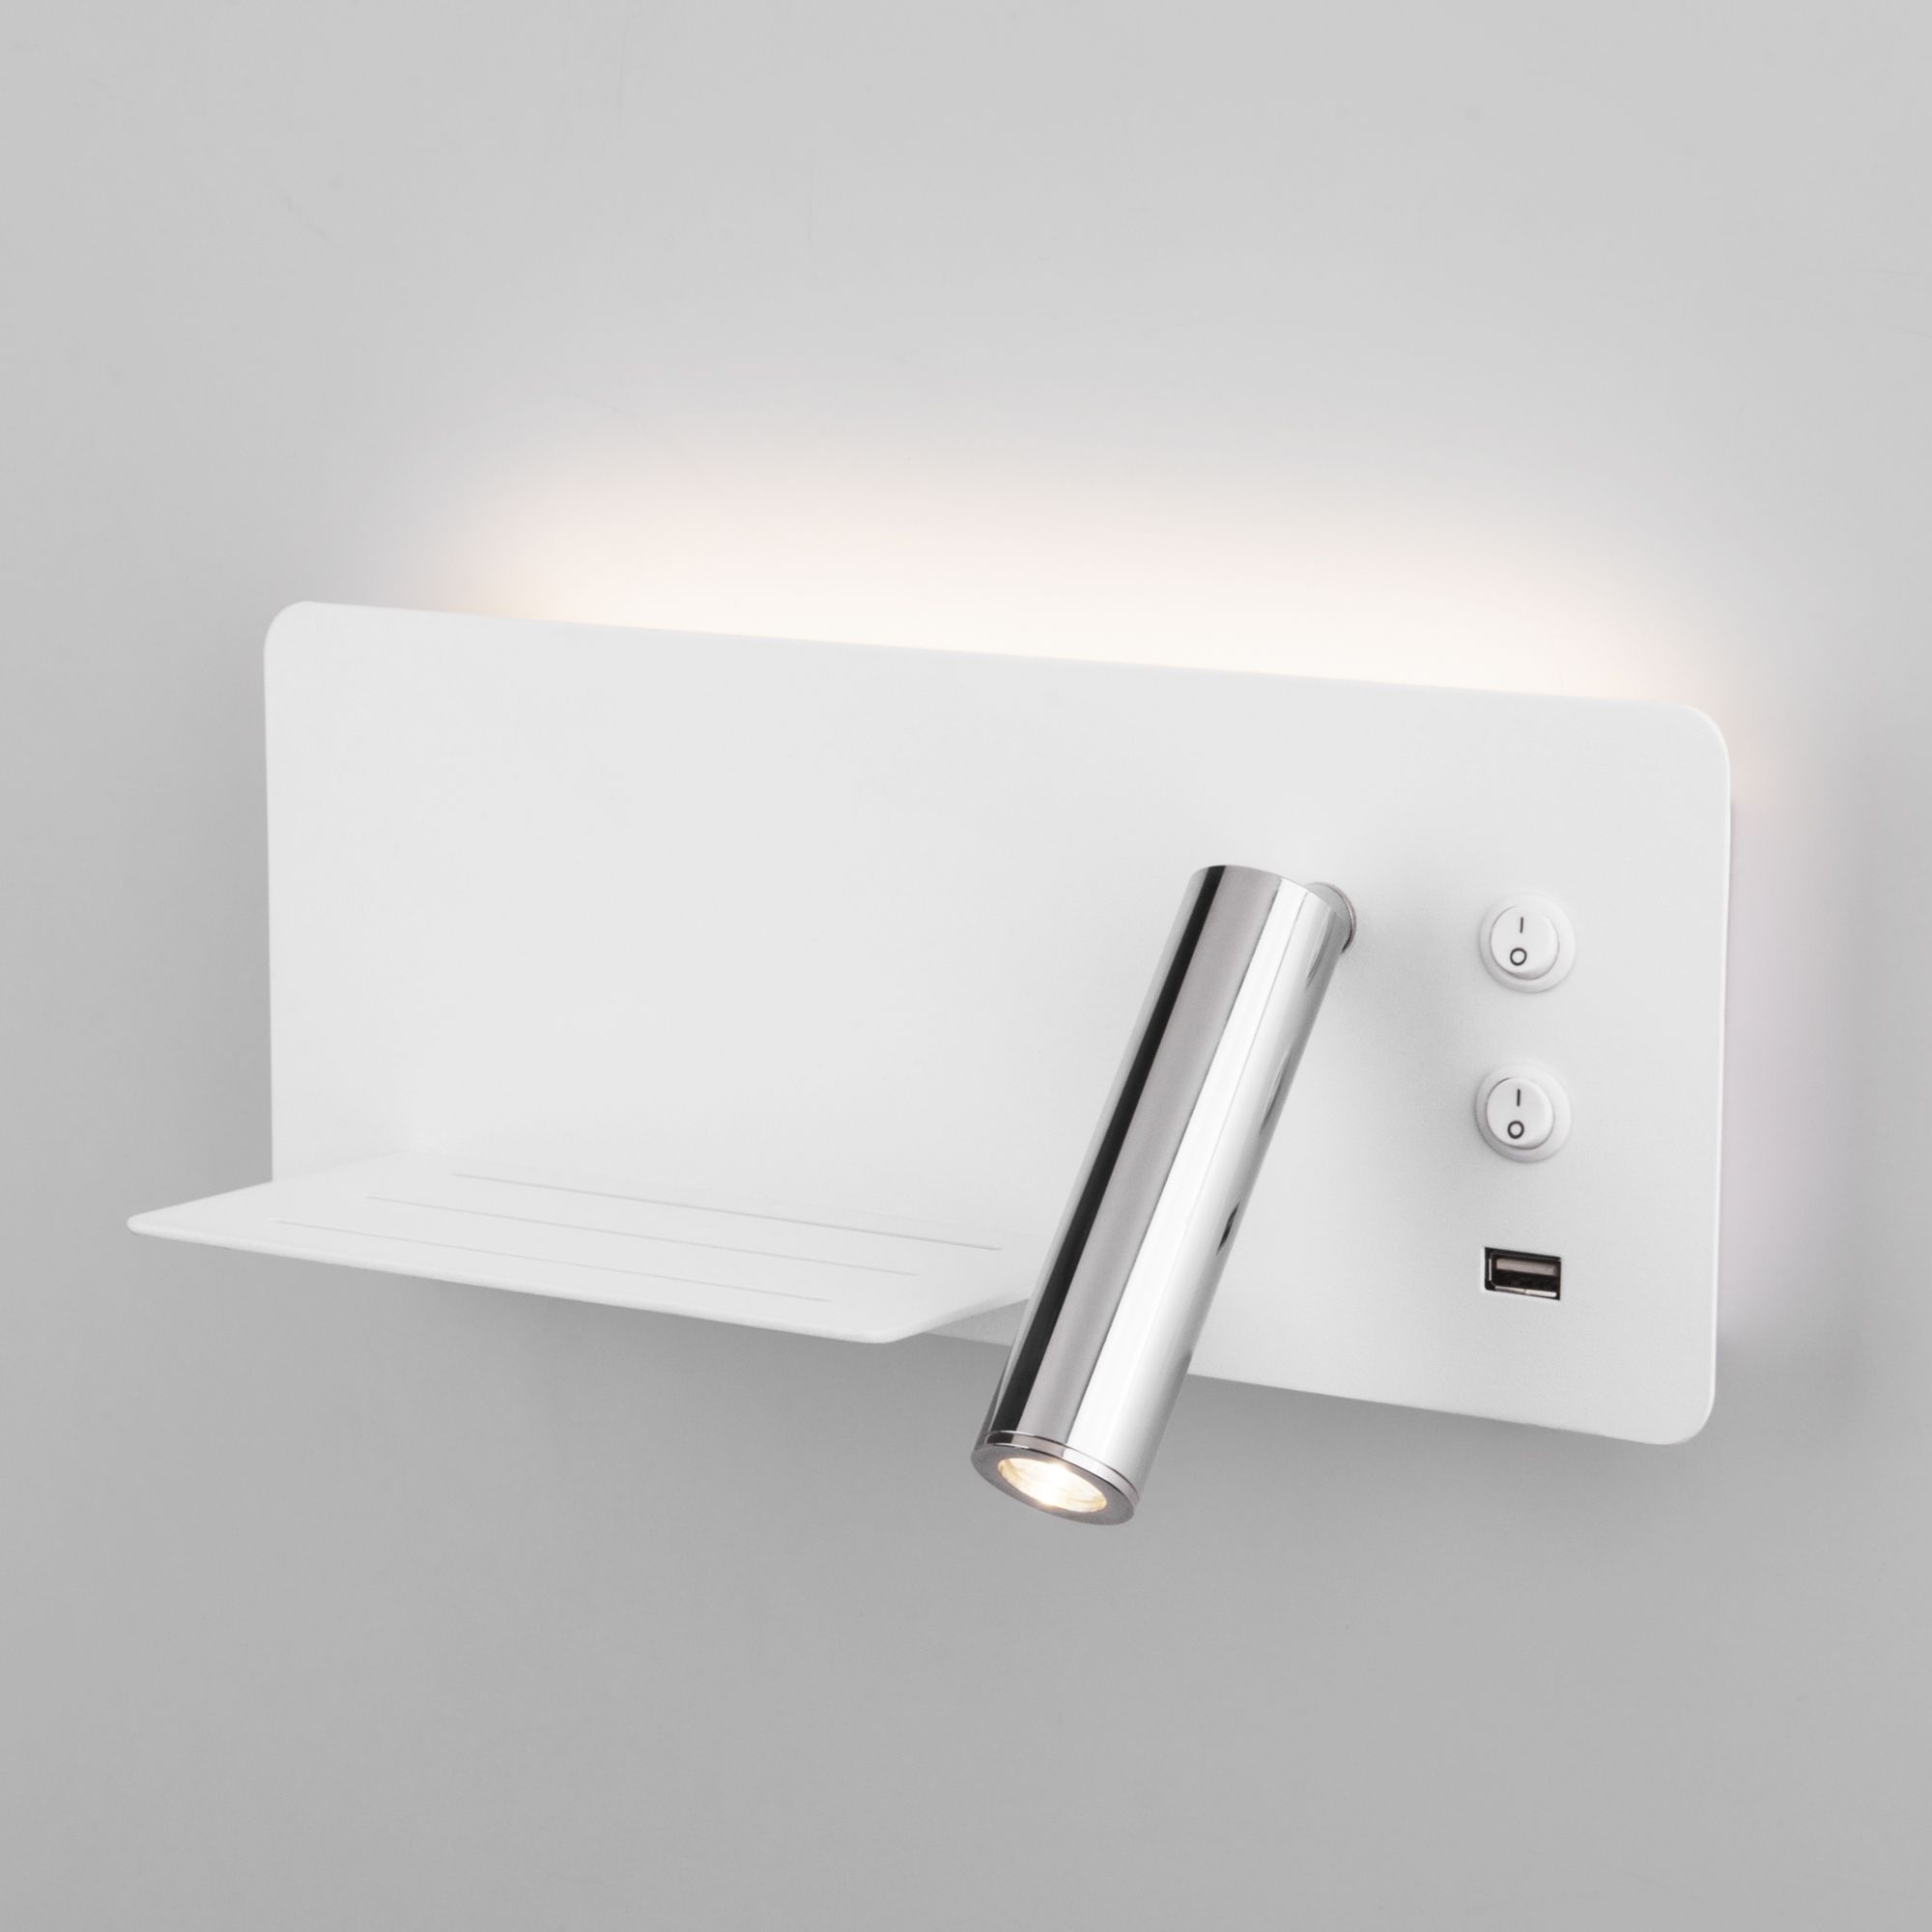 Настенный светодиодный светильник с USB Fant L LED (левый) Elektrostandard Fant MRL LED 1113 белый/хром. Фото 1